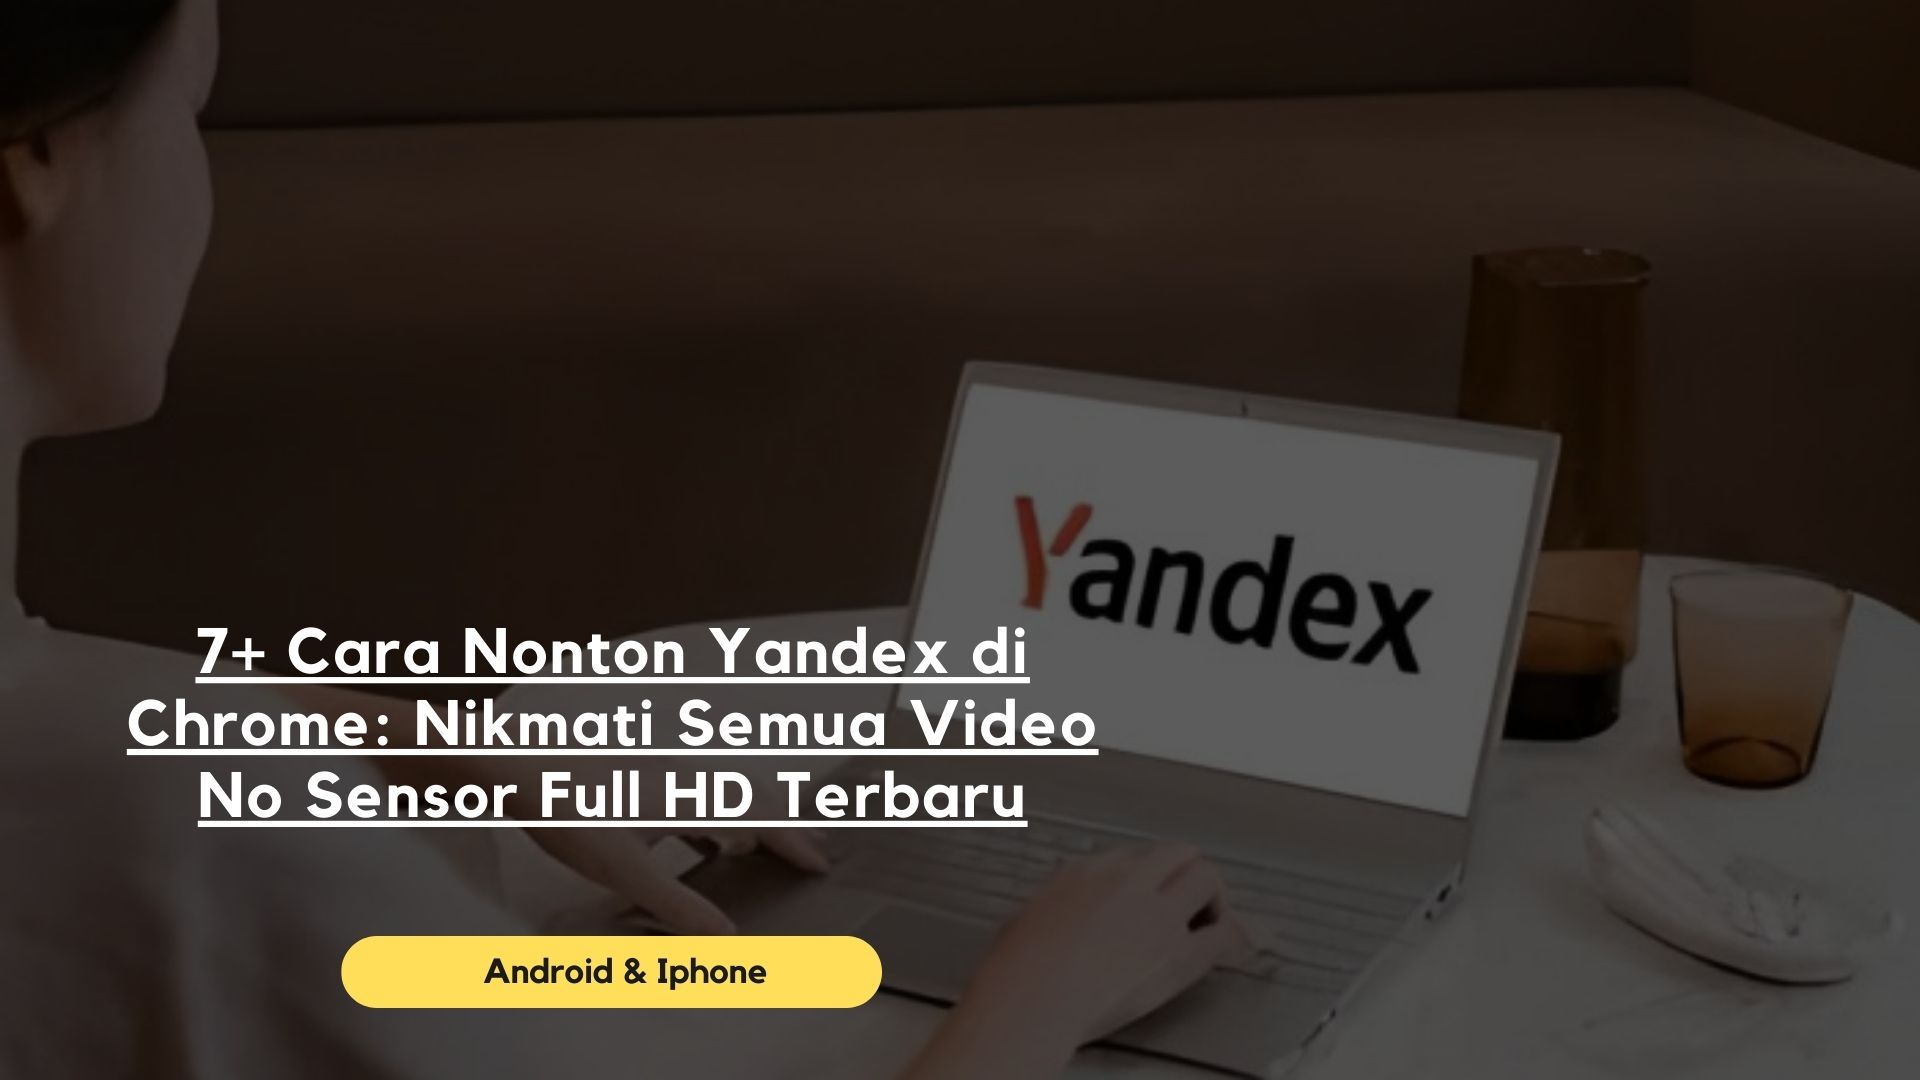 7+ Cara Nonton Yandex di Chrome: Nikmati Semua Video No Sensor Full HD Terbaru